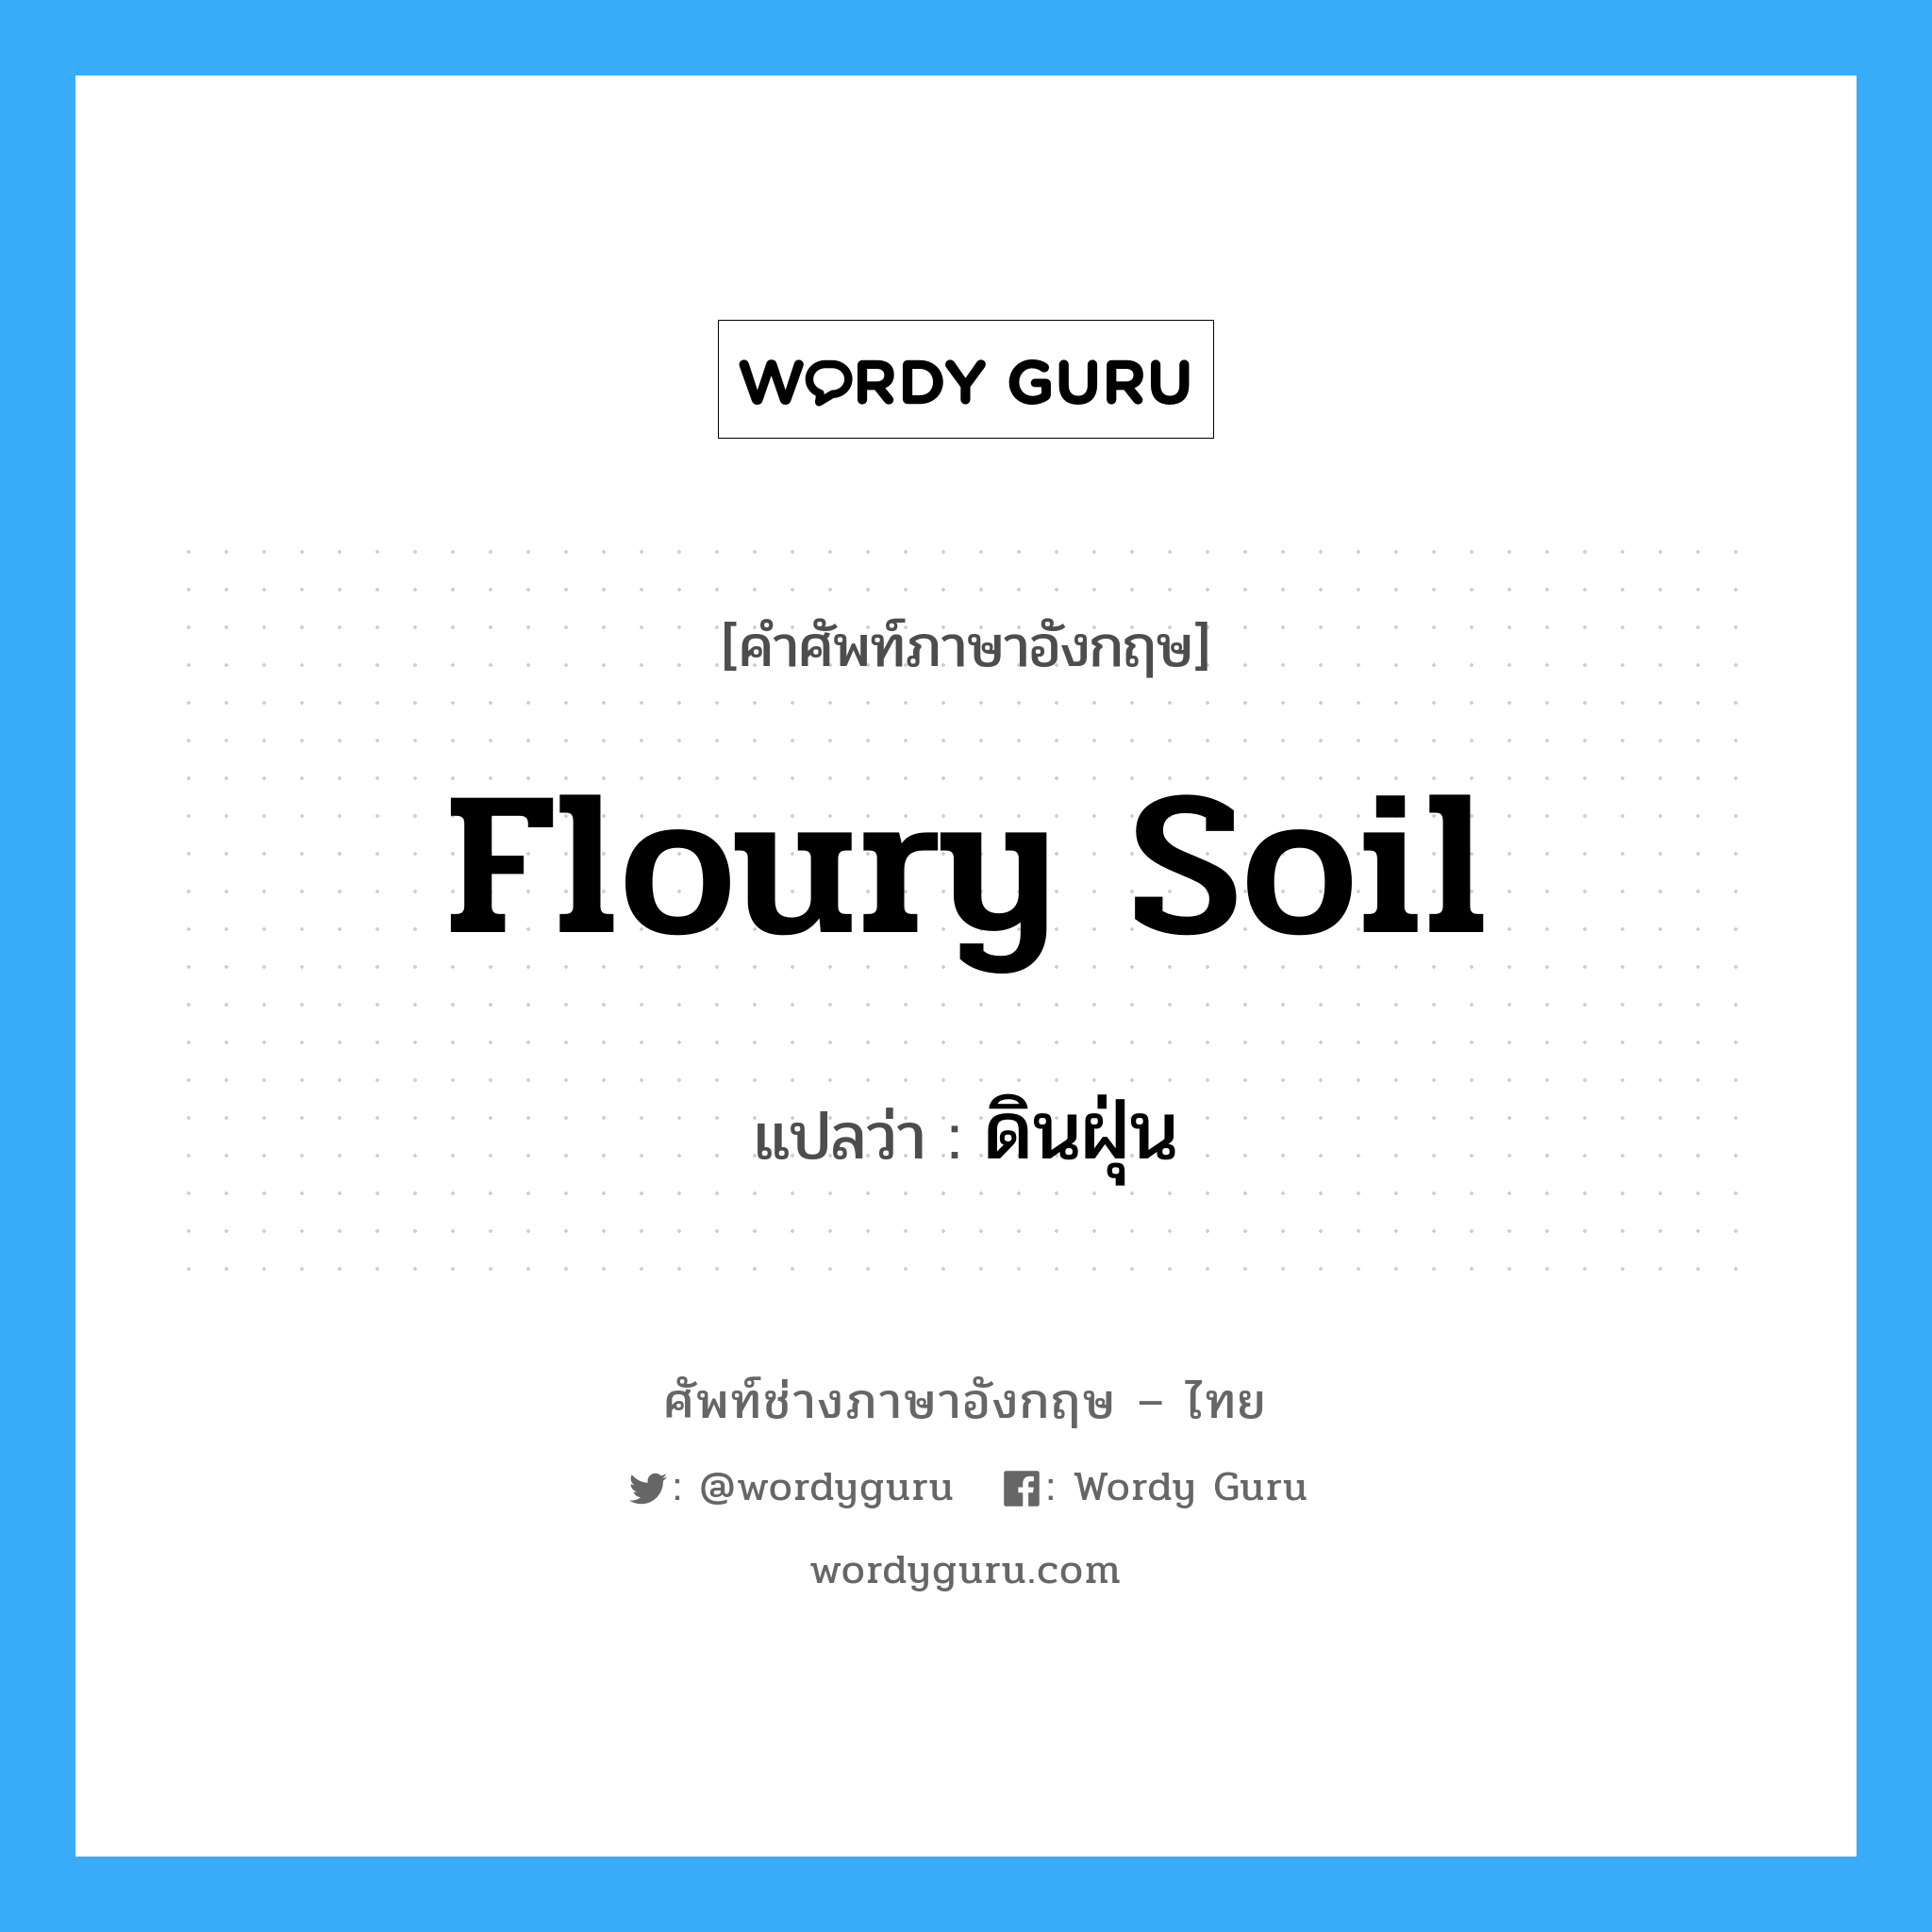 floury soil แปลว่า?, คำศัพท์ช่างภาษาอังกฤษ - ไทย floury soil คำศัพท์ภาษาอังกฤษ floury soil แปลว่า ดินฝุ่น